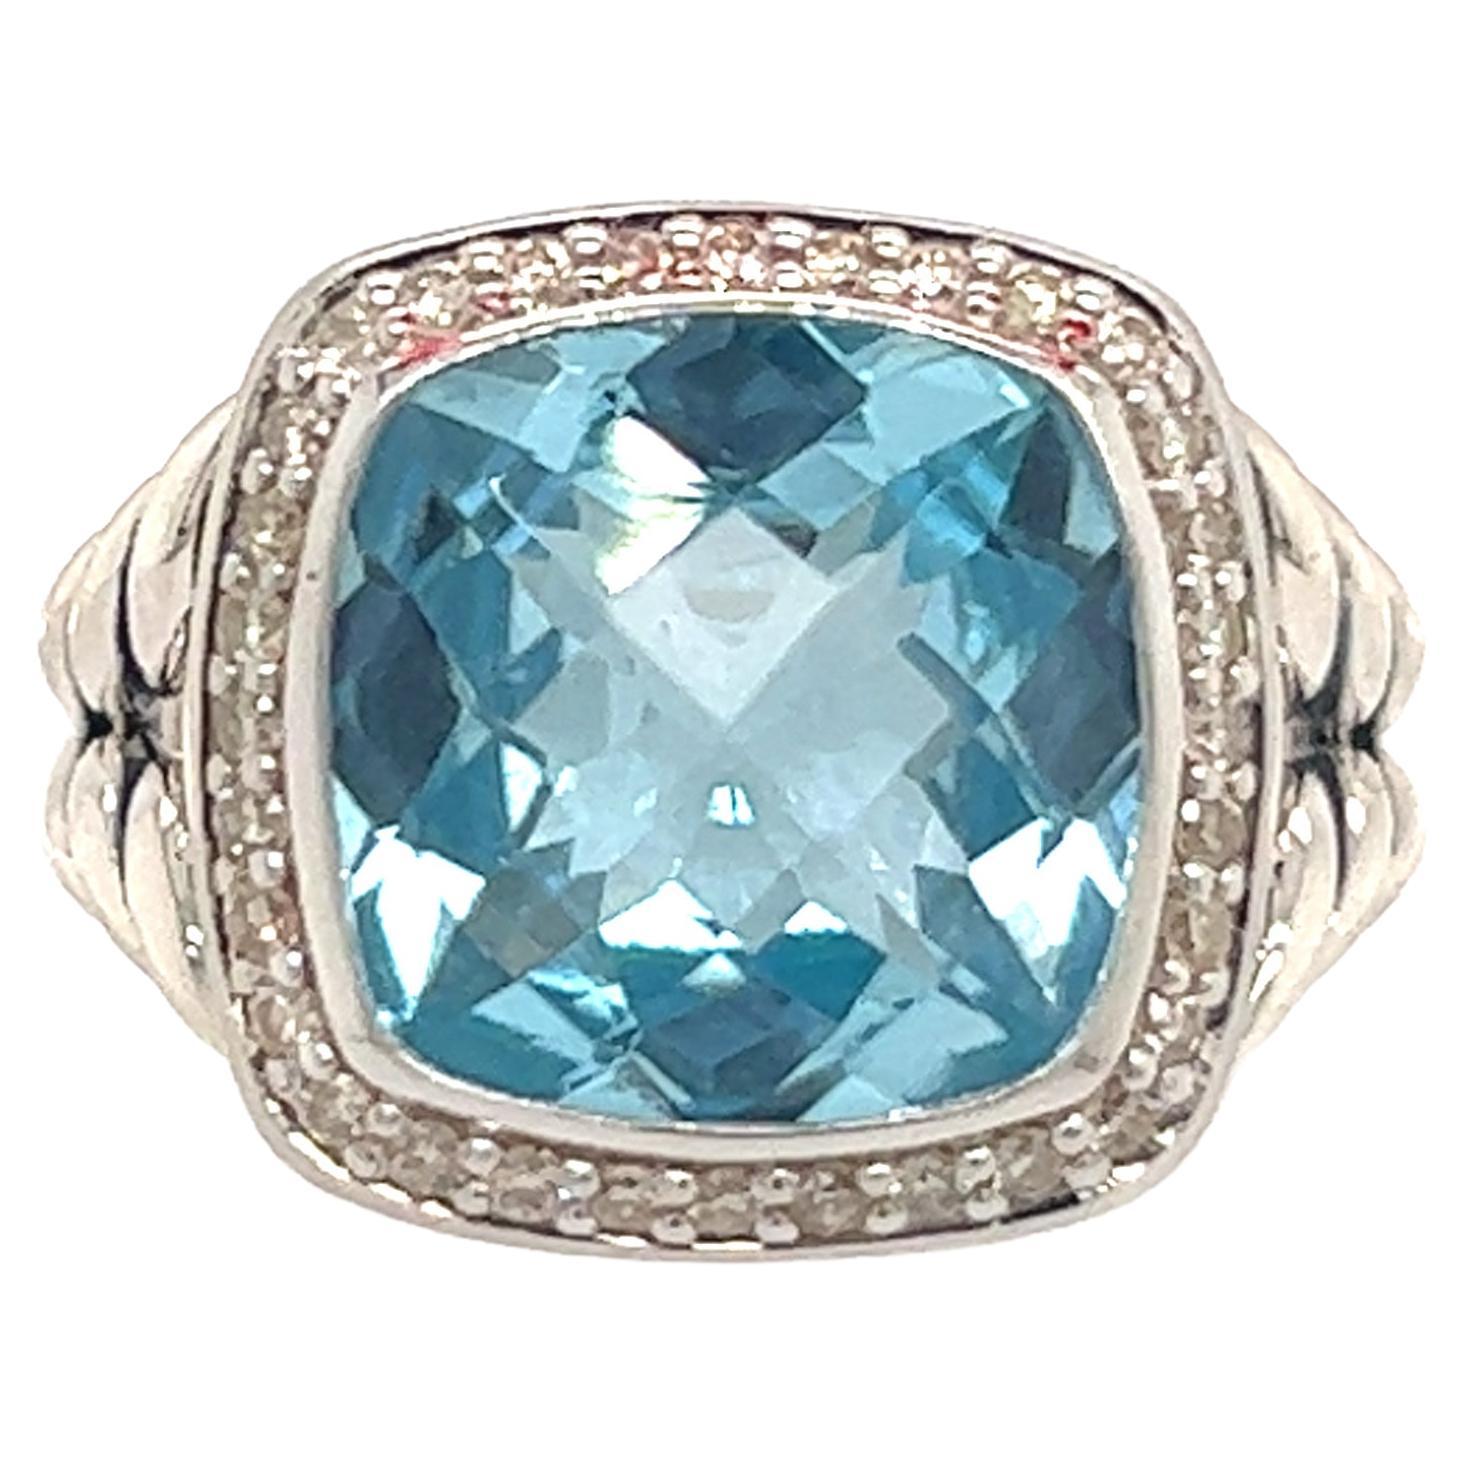 David Yurman Estate Blue Topaz Diamond Albion Ring Silver 6.28 TCW